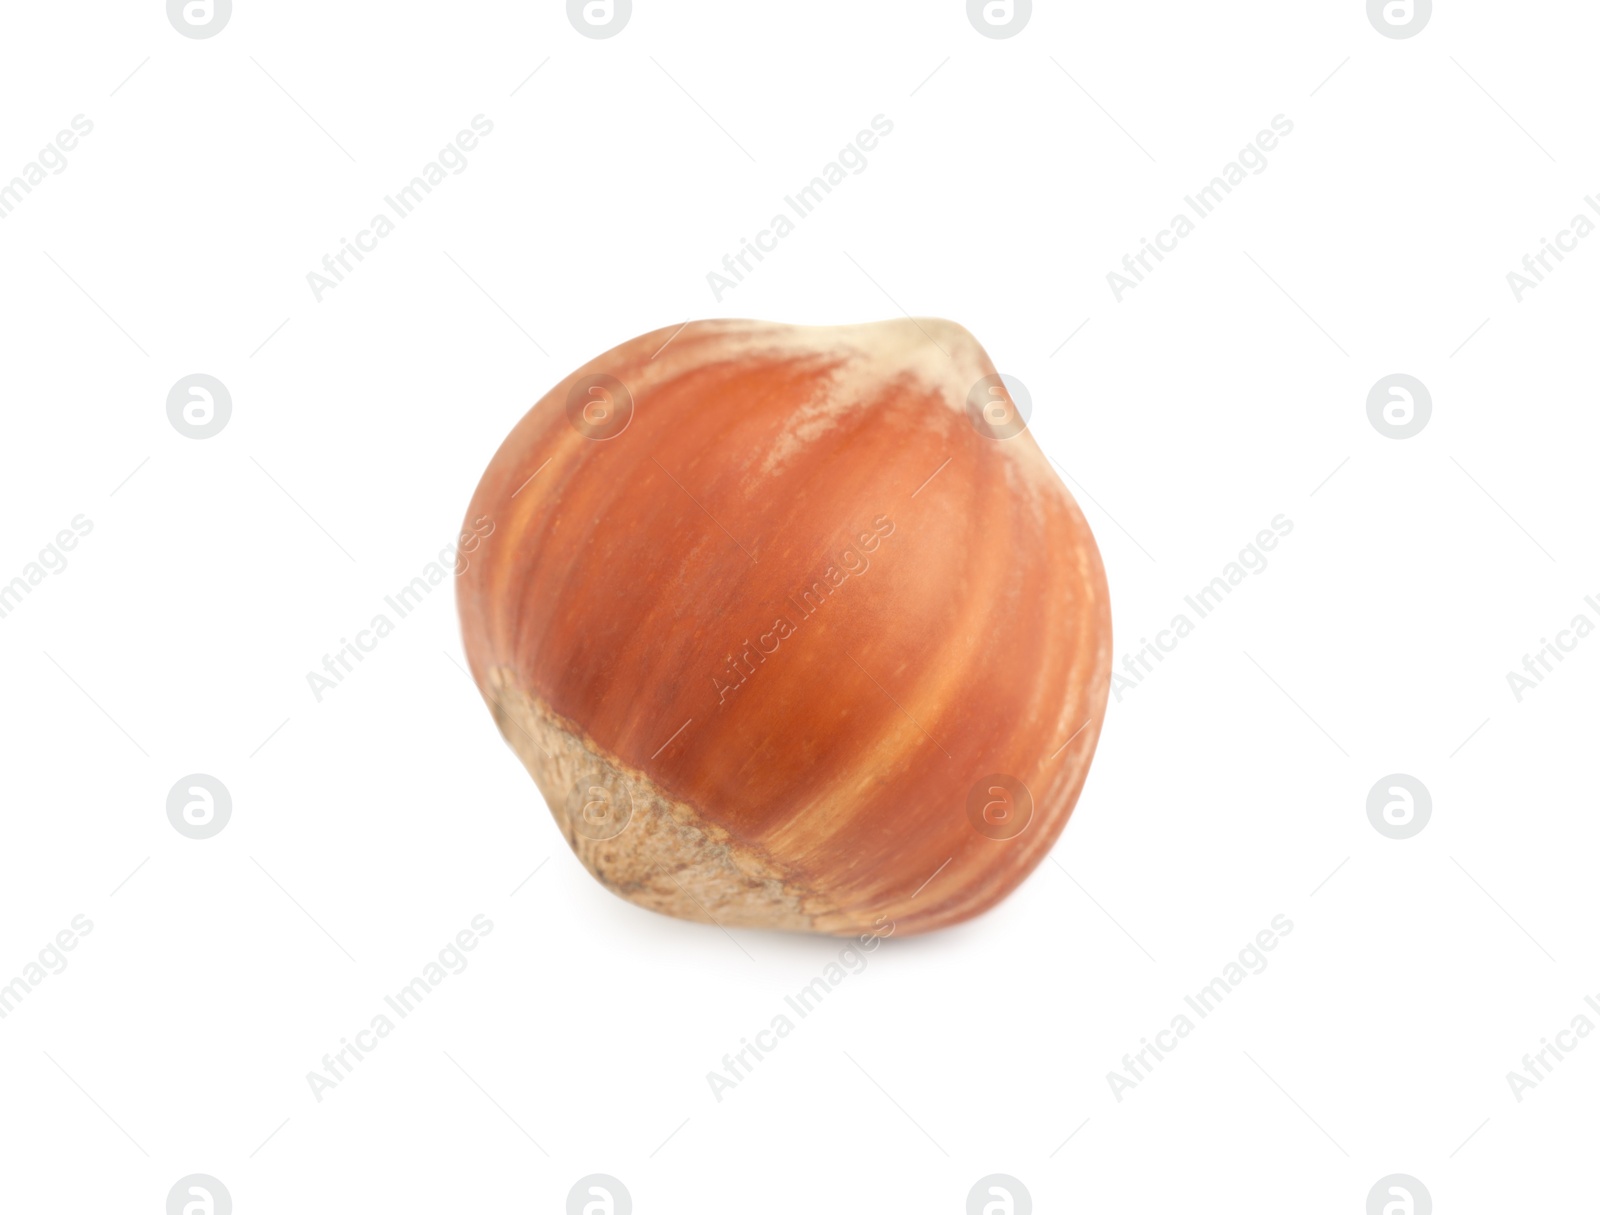 Photo of Tasty organic hazelnut in shell on white background